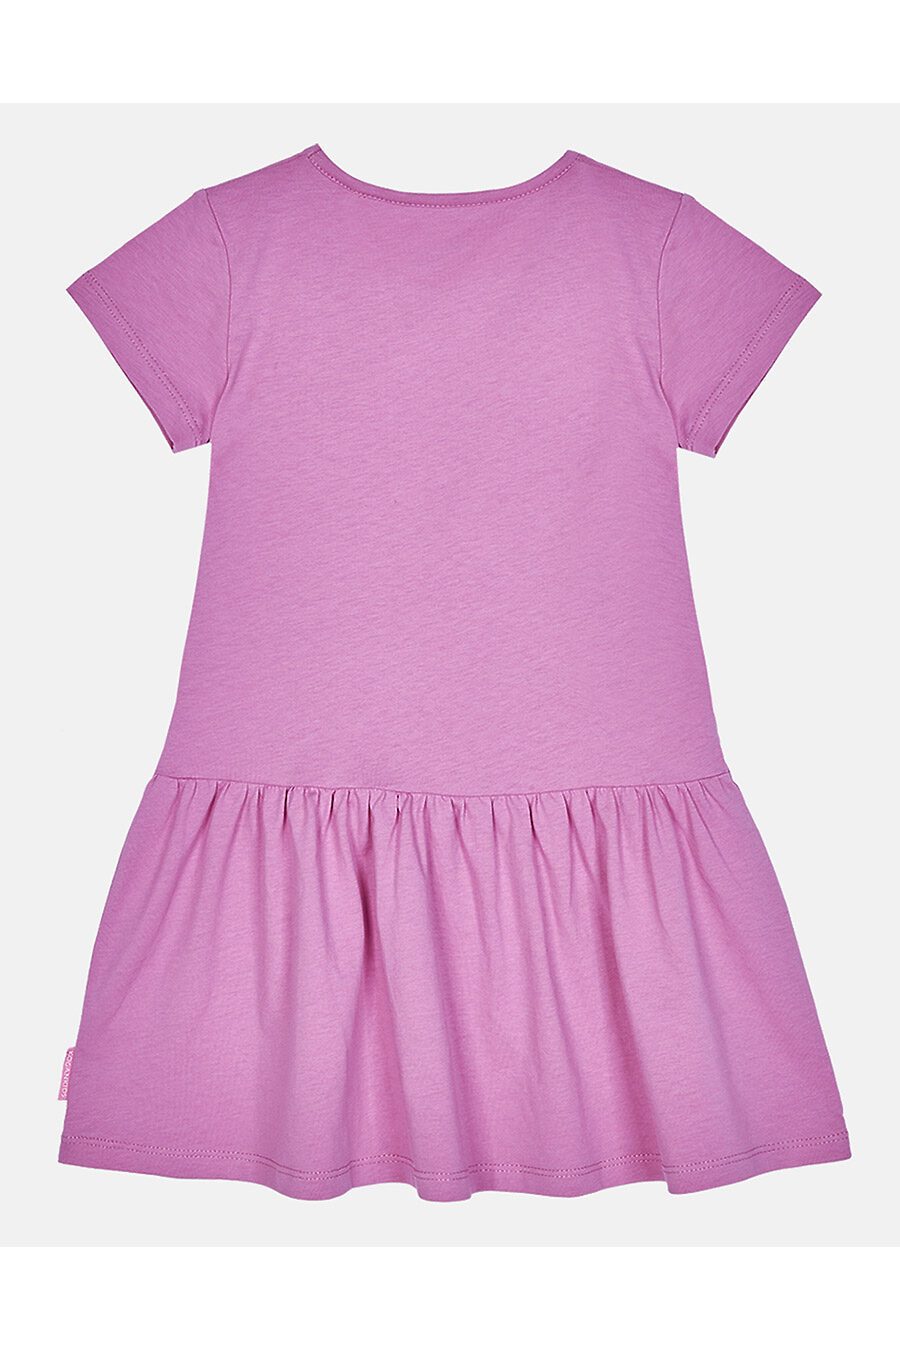 Платье для девочек KOGANKIDS 784555 купить оптом от производителя. Совместная покупка детской одежды в OptMoyo